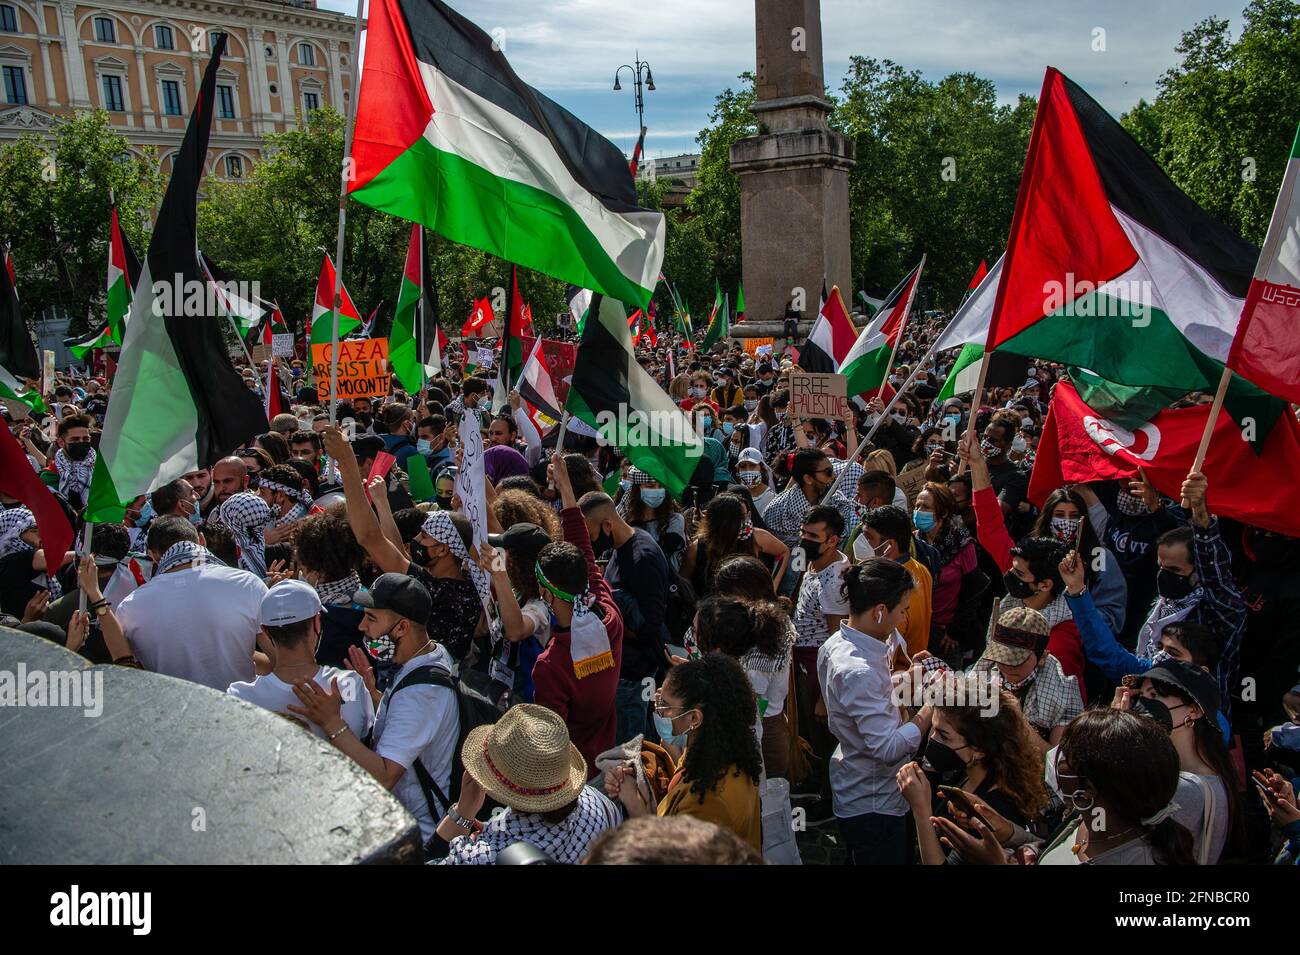 Dimostrazione di sostegno al popolo palestinese durante l'attacco israeliano alla striscia di Gaza. Roma, 15 maggio 2021 Foto Stock